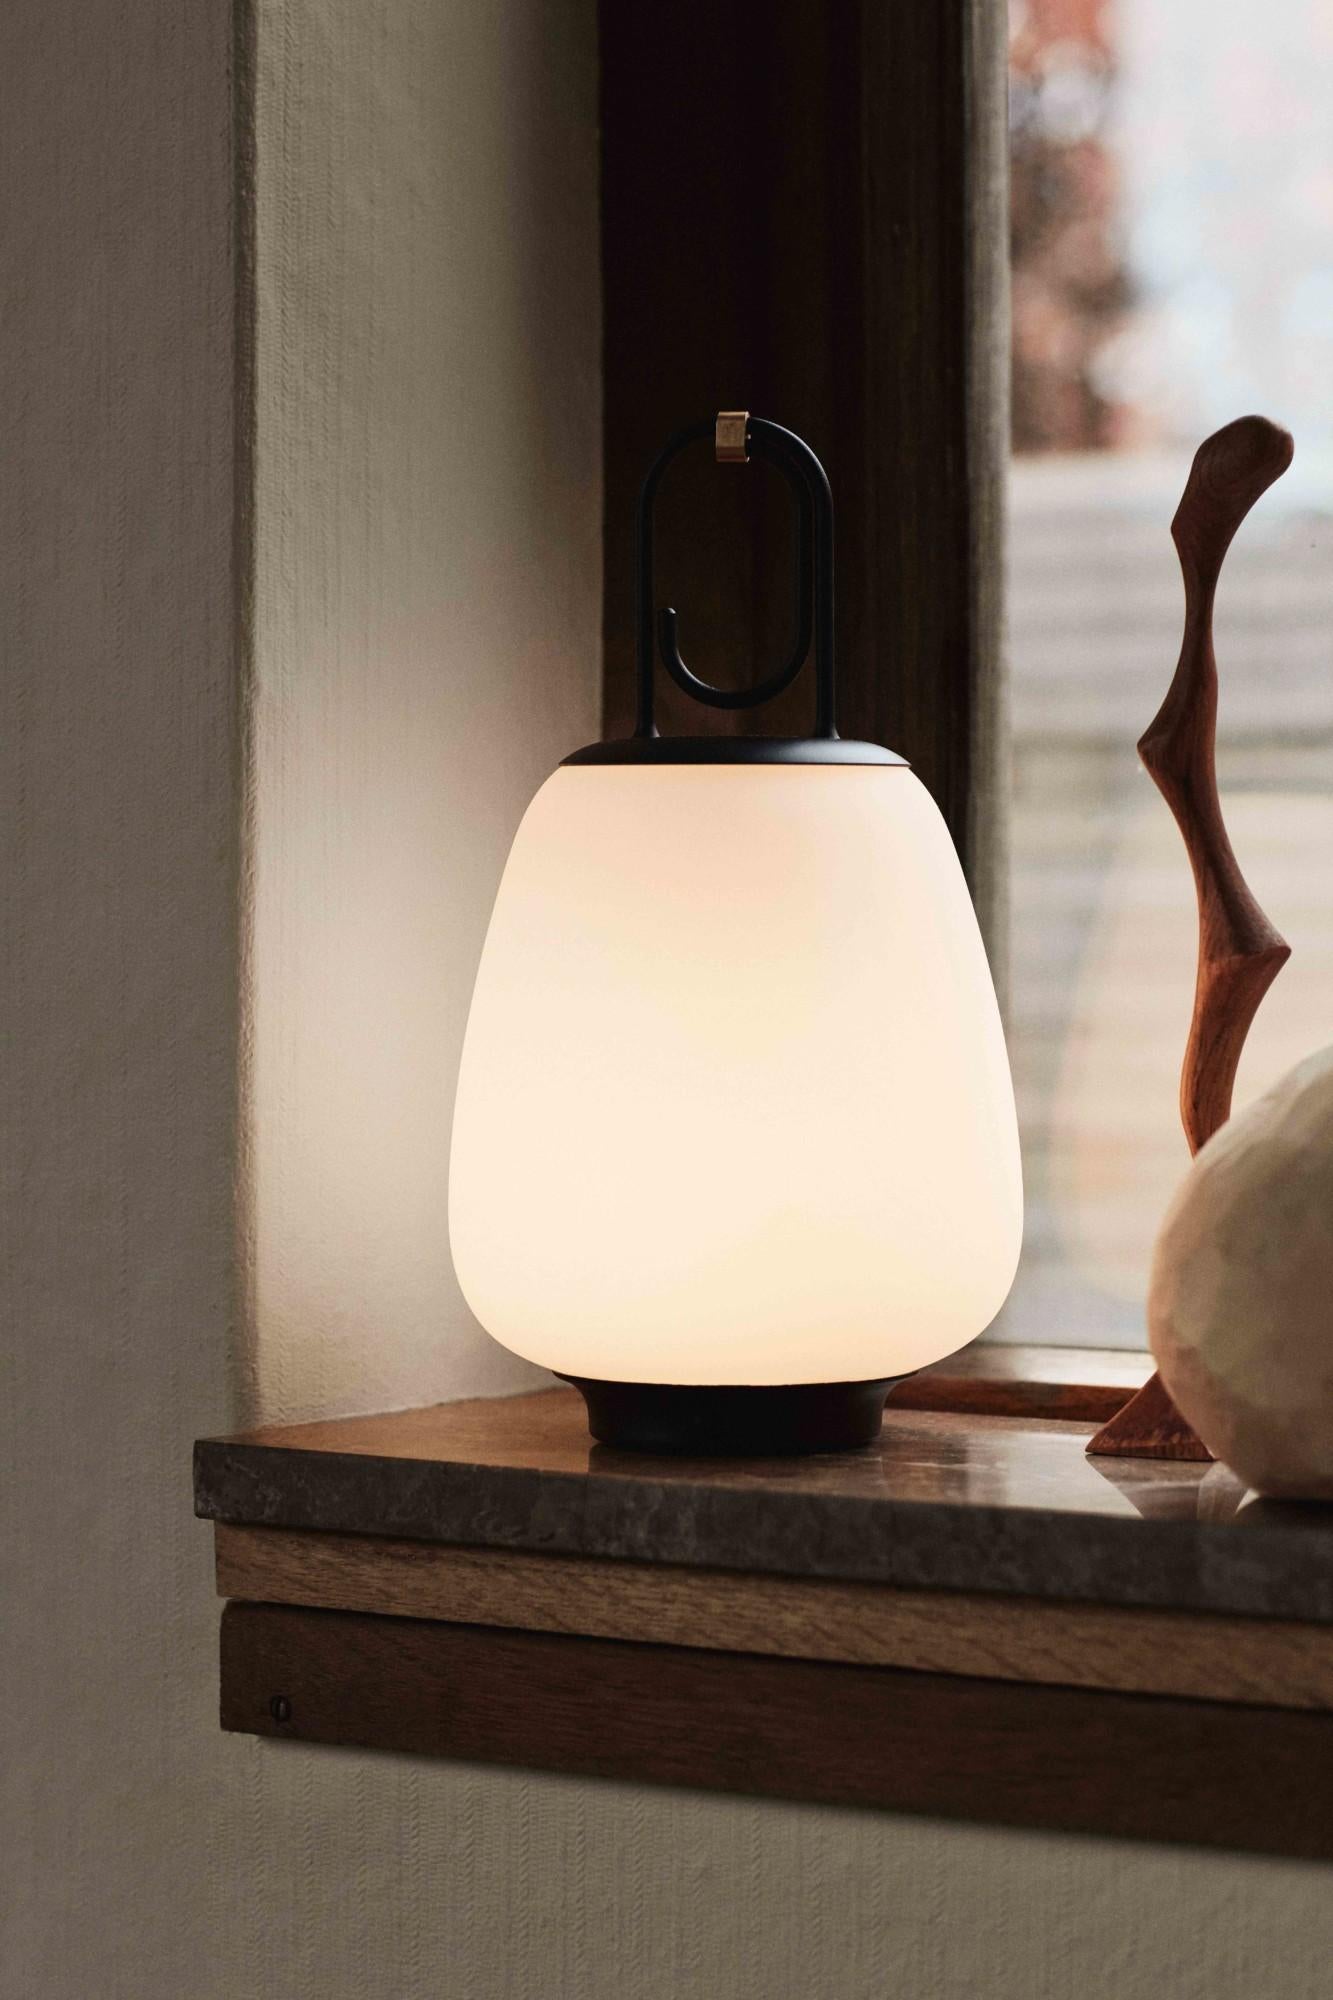 Cette élégante lampe portable, inspirée de l'éclat doré de la ville toscane de Lucques, imite la chaleur de la lumière nocturne de la ville. Conçu comme un objet polyvalent, le Lucca, qui fonctionne sur piles, passe facilement de l'intérieur à